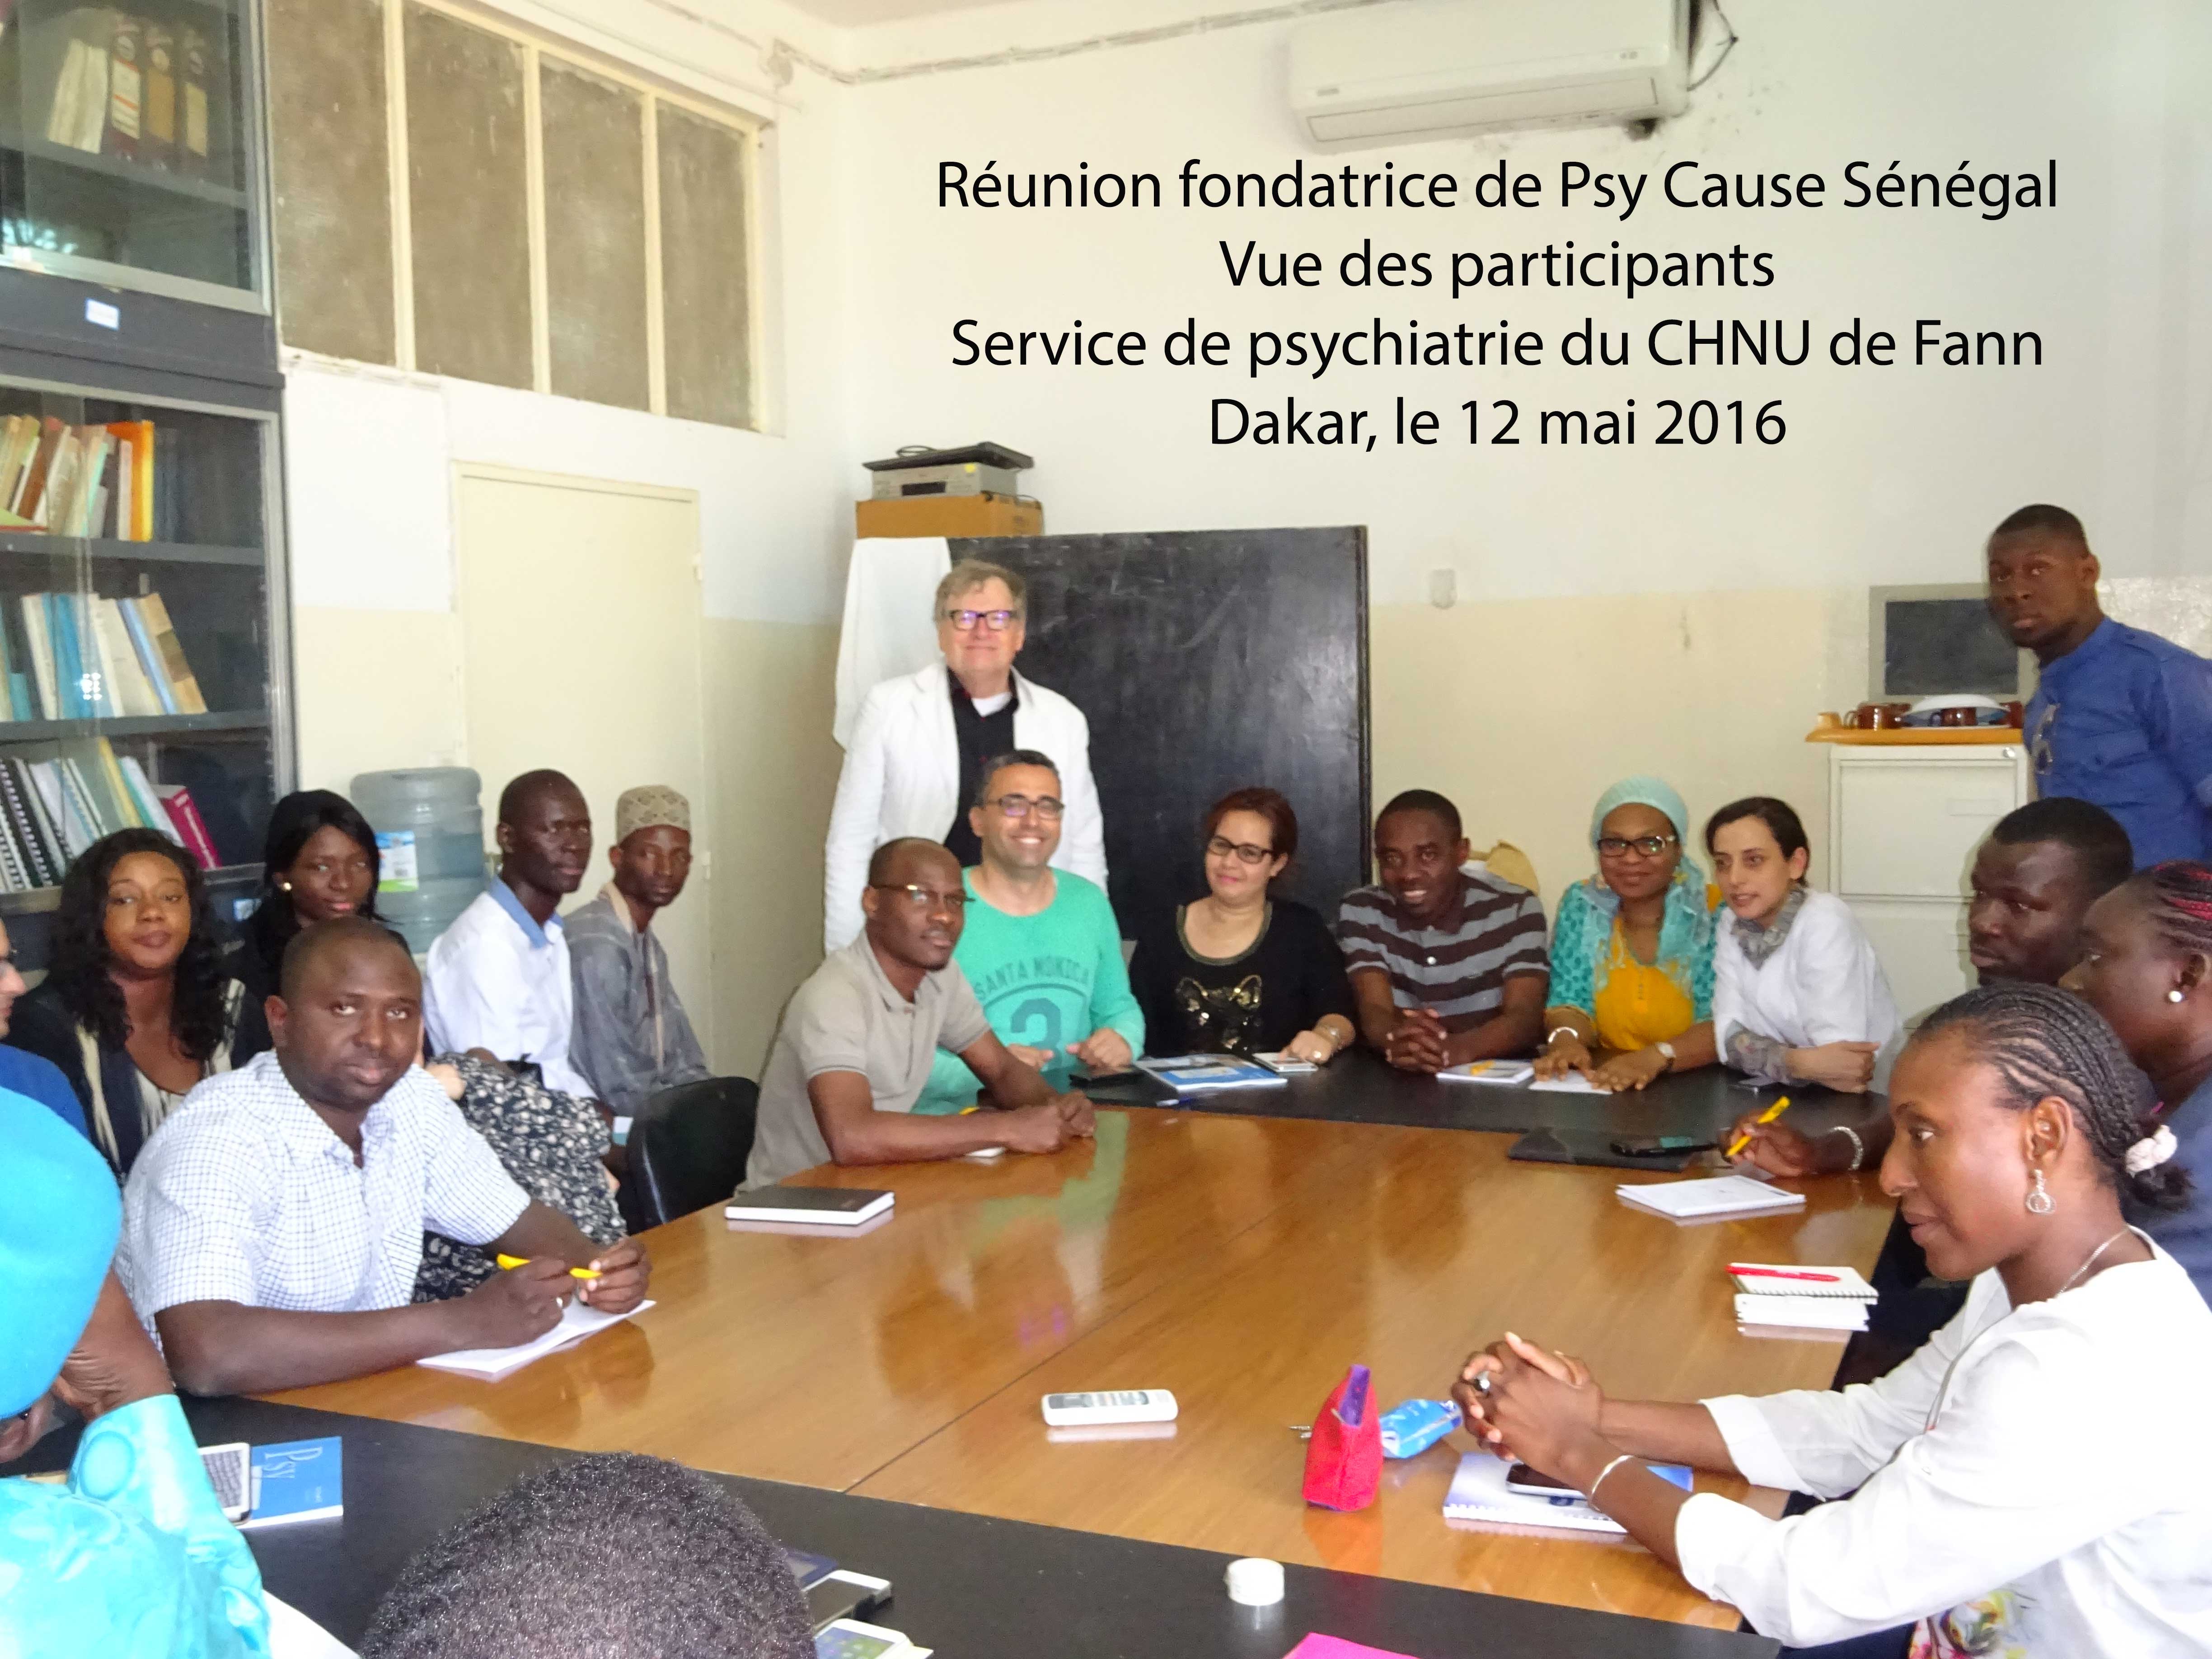 Fondation de Psy Cause Sénégal au CHNU de Fann-Dakar (12 mai 2016)